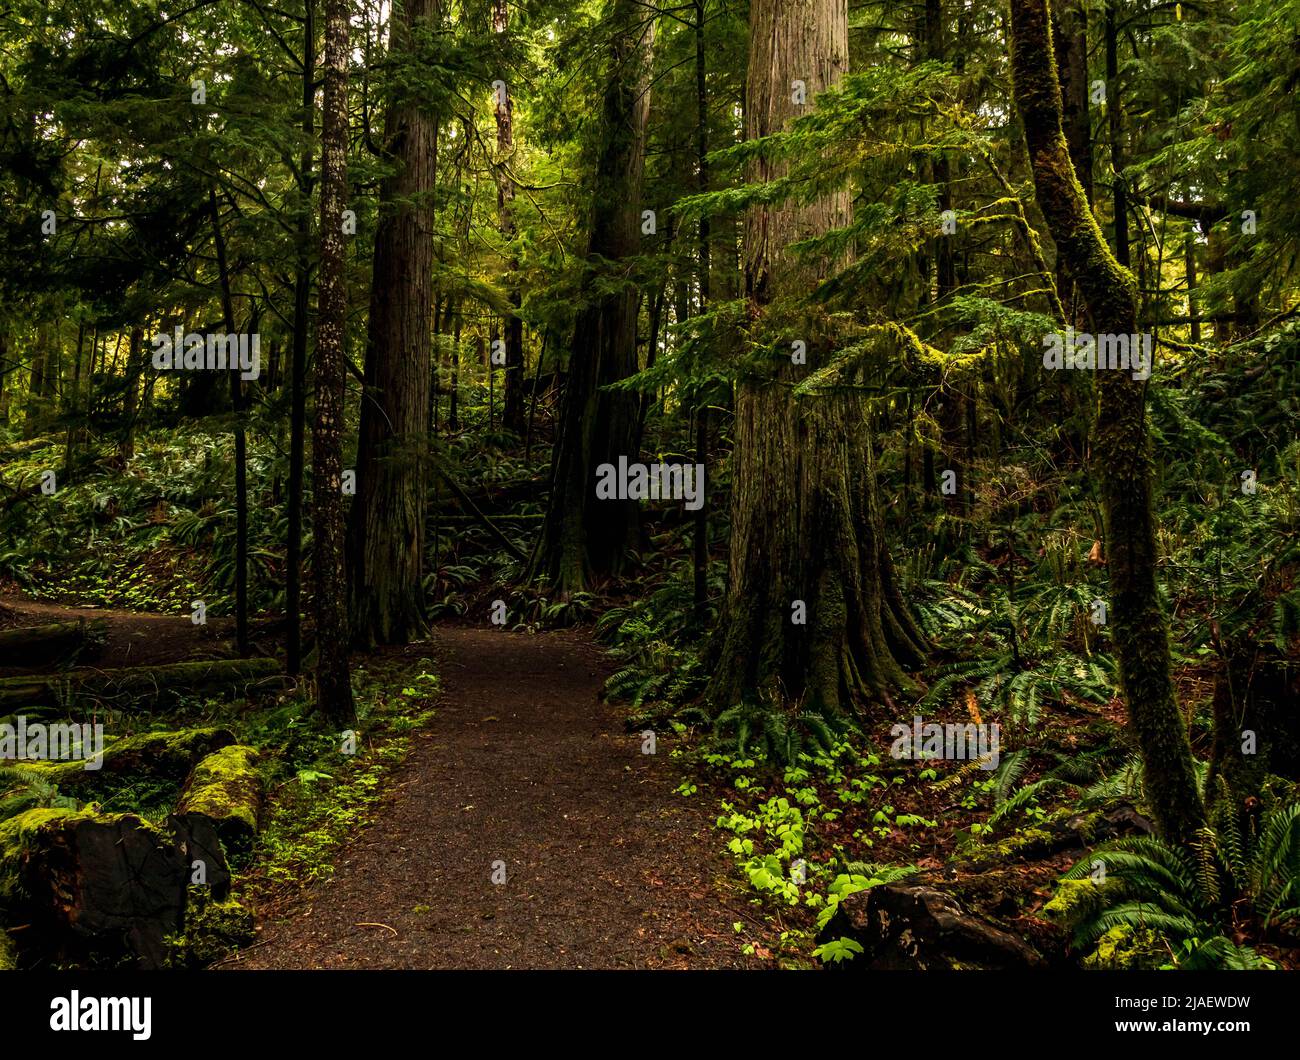 Sentier forestier en Colombie-Britannique avec de grands arbres de sapin, de cèdre, d'épinette et de pruche. Préserver la diversité qui a été endommagée par une exploitation forestière excessive. Banque D'Images